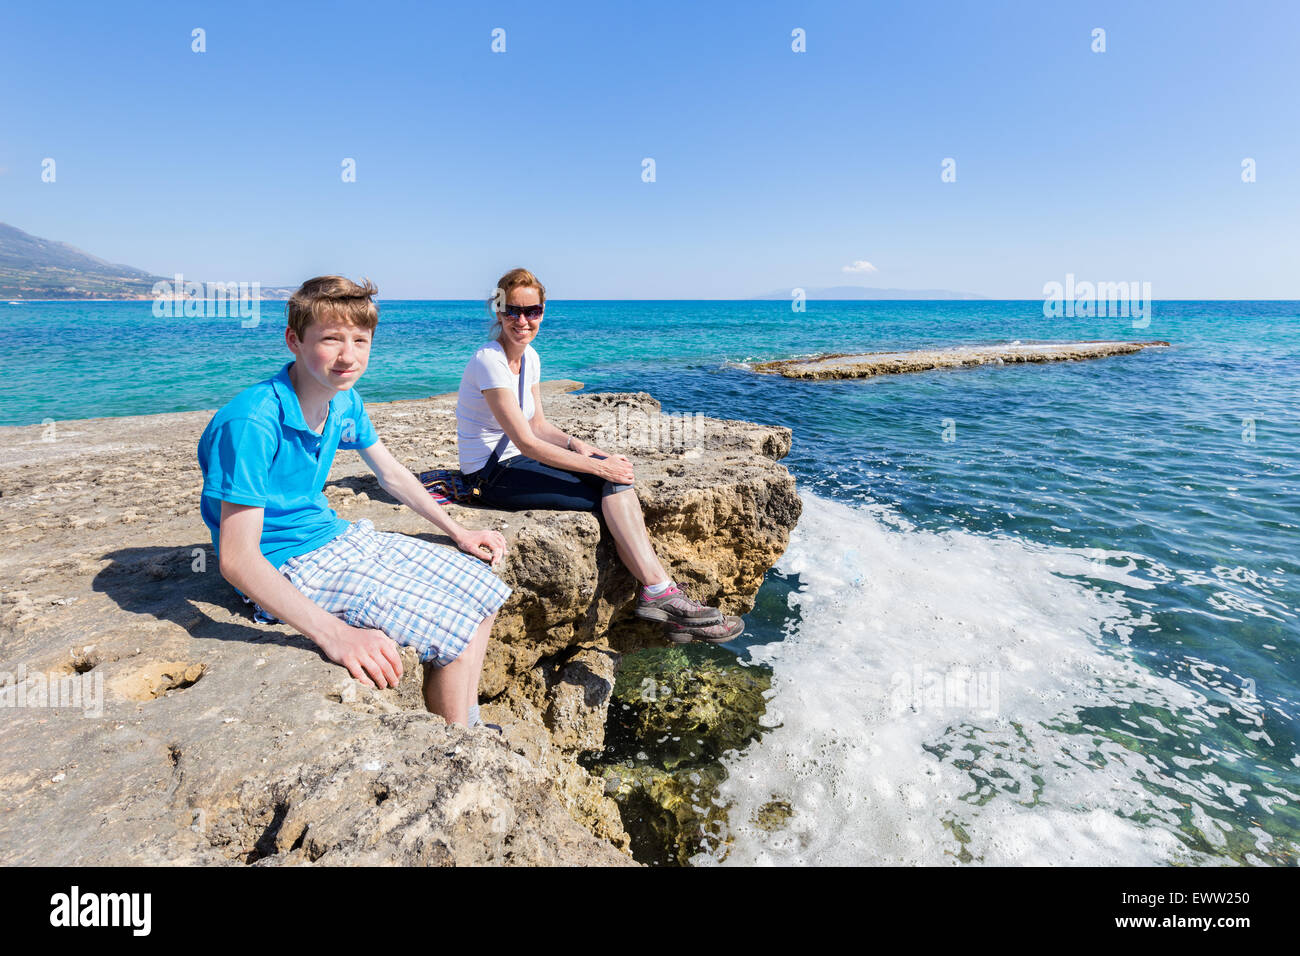 La mère et le fils en tant que touristes assis sur la roche du blue sea profitant de locations Banque D'Images